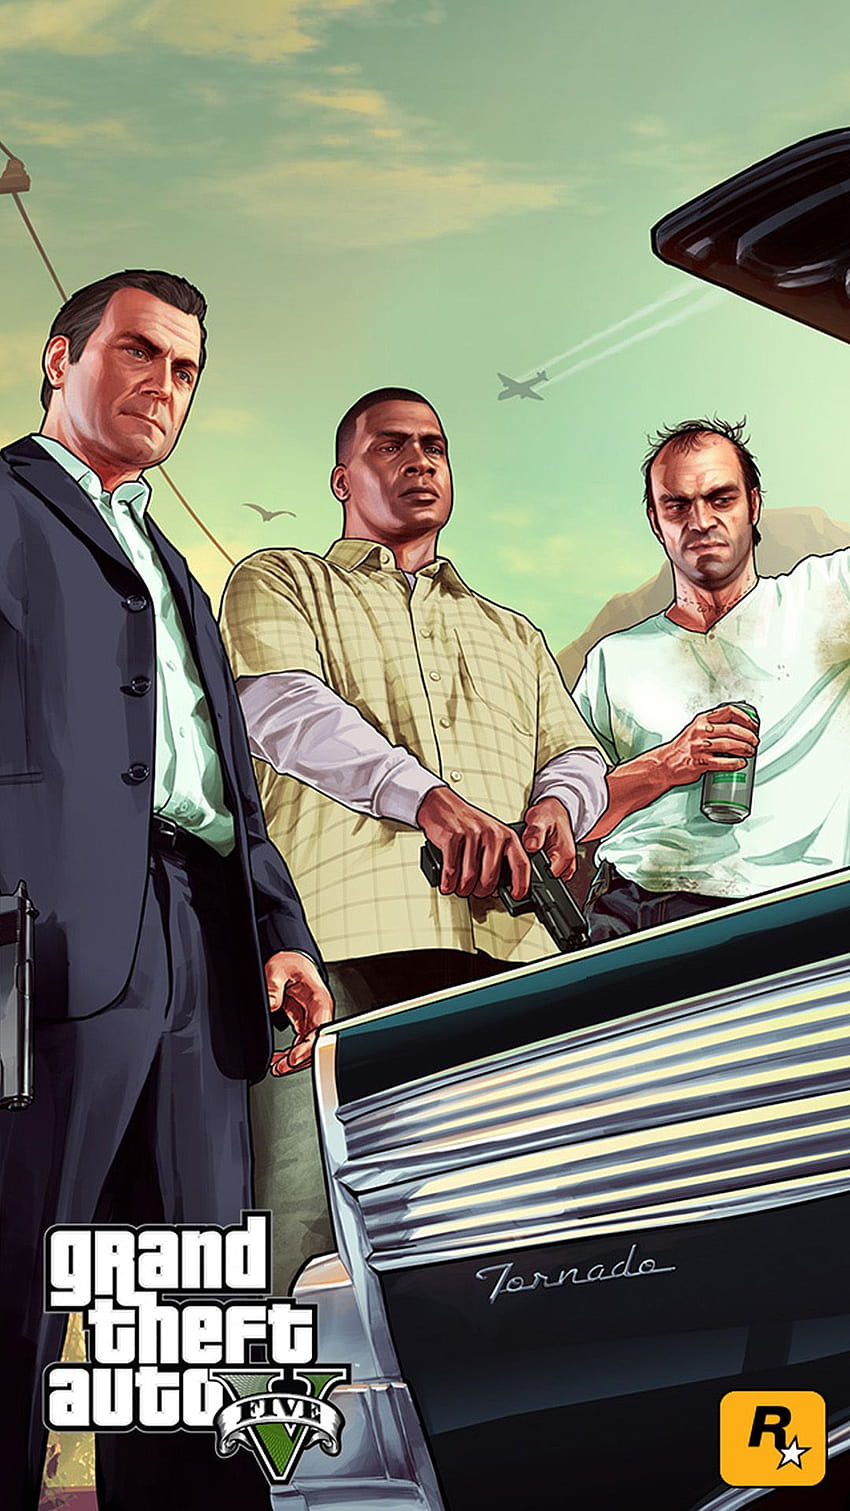 Grand Theft Auto V Wallpaper 4K, GTA 5, Michael De Santa, Townley, #10738